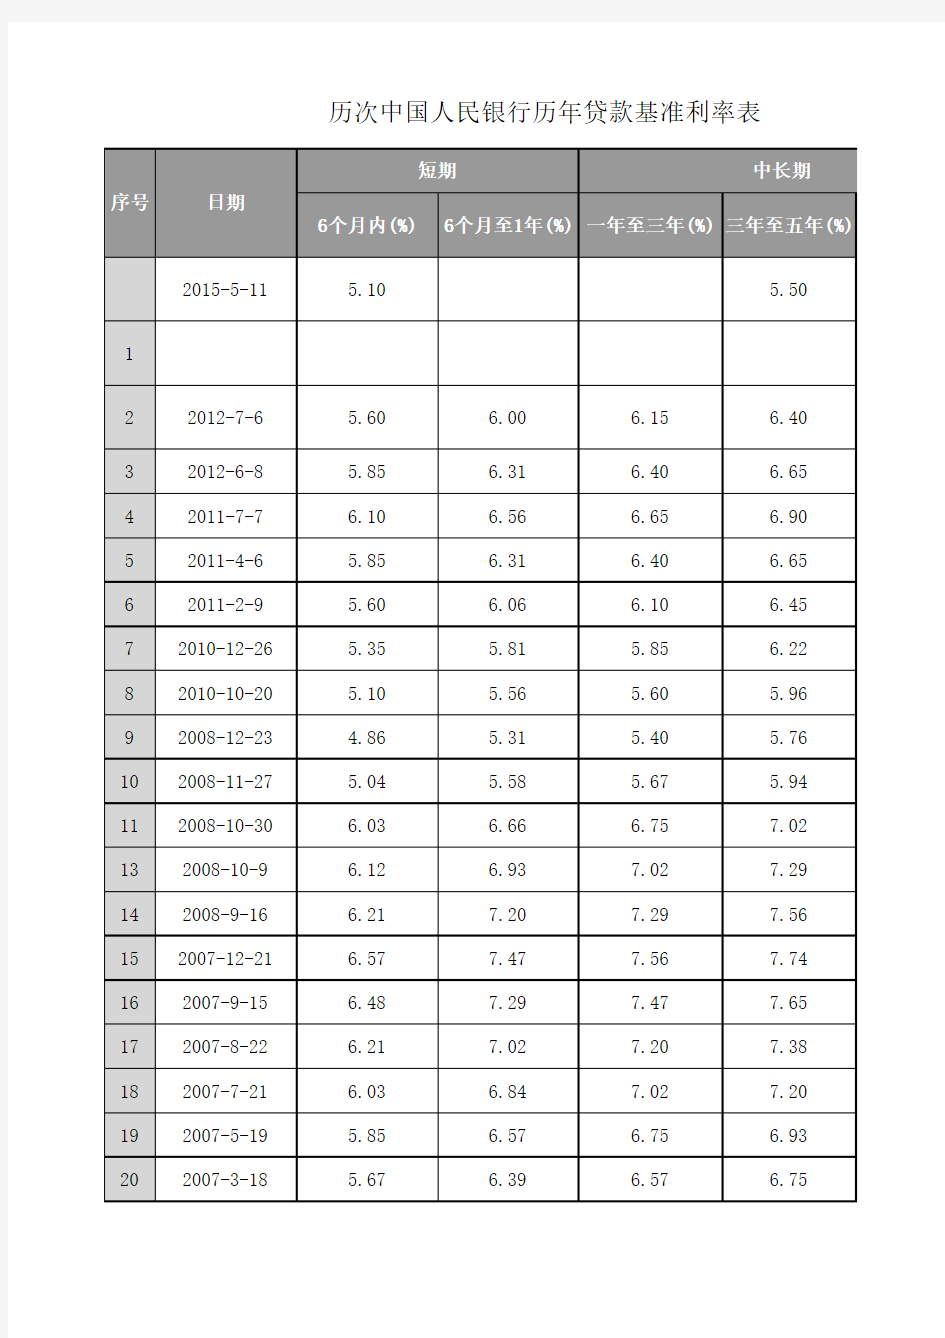 历次中国人民银行历年贷款基准利率表更新至2015年6月28日